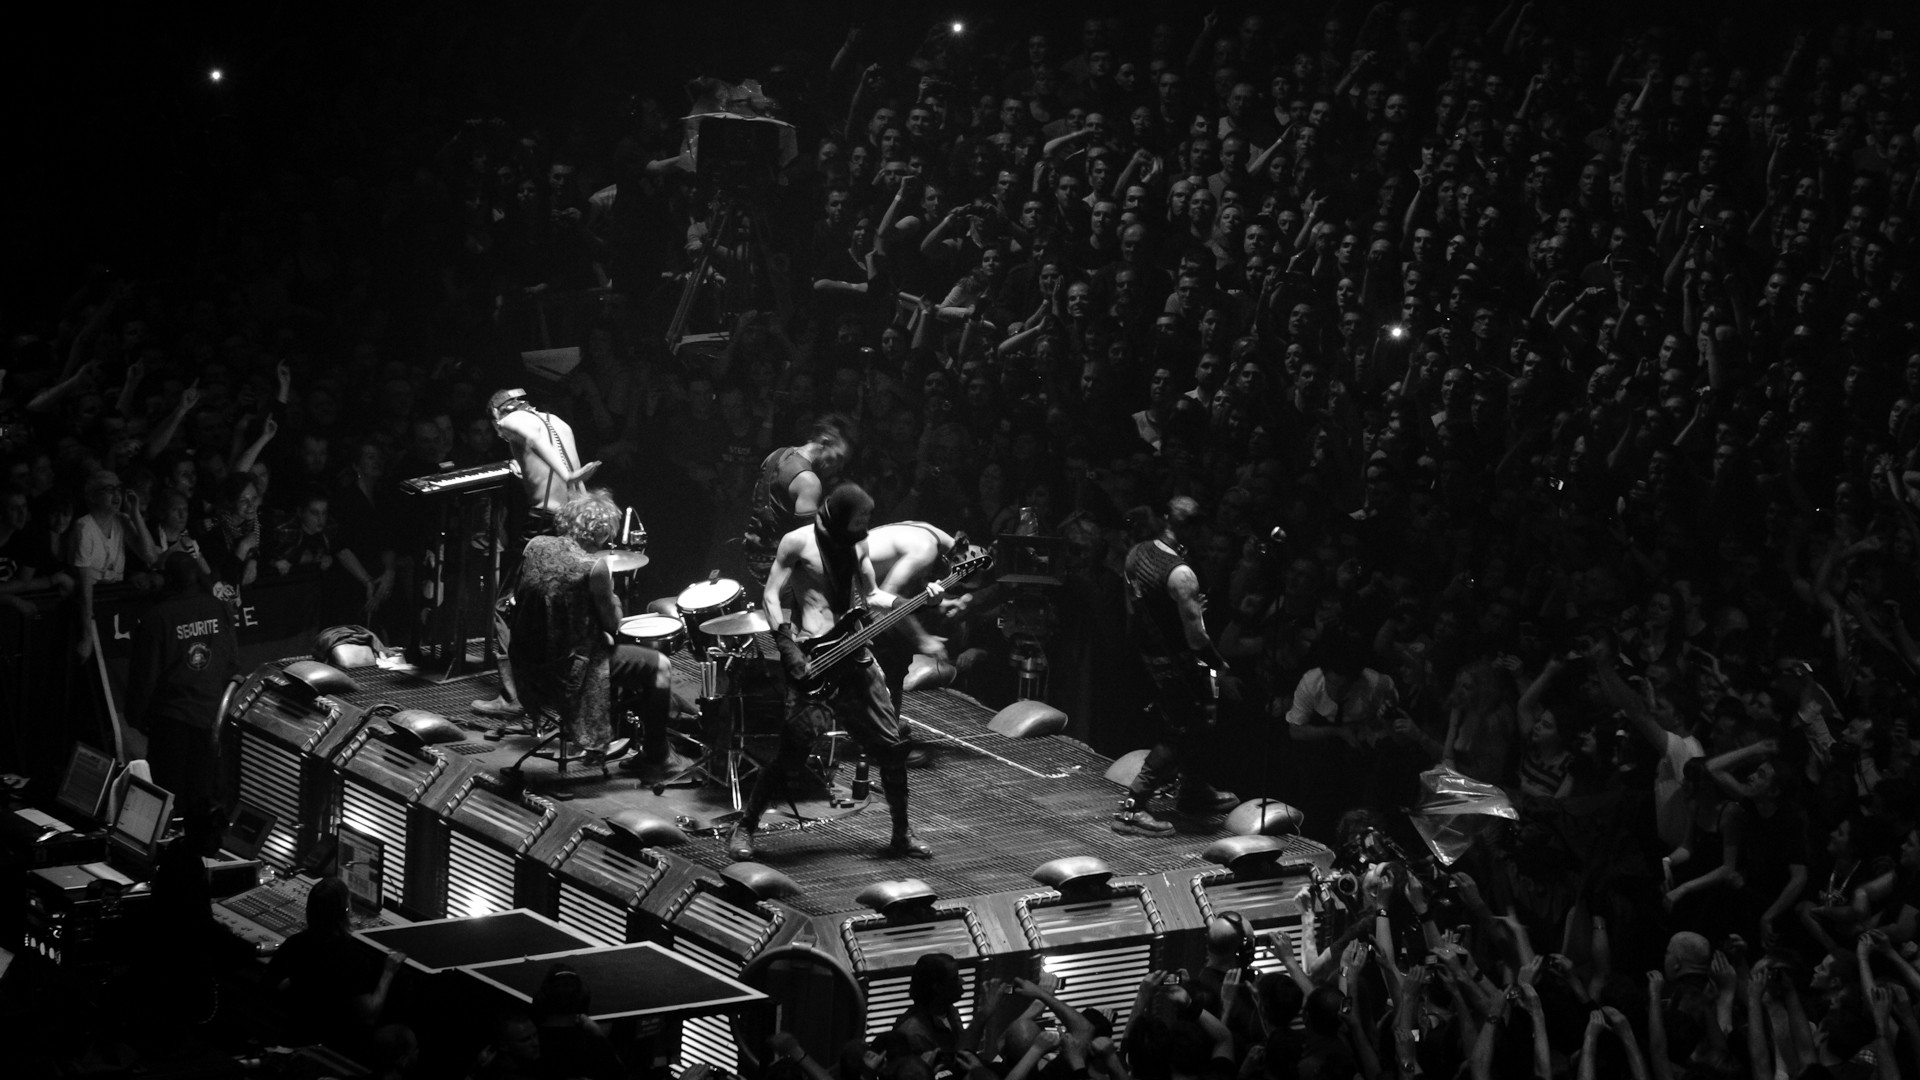 Rammstein Industrial Metal Heavy Concert Concerts Wallpapers Hd Desktop And Mobile